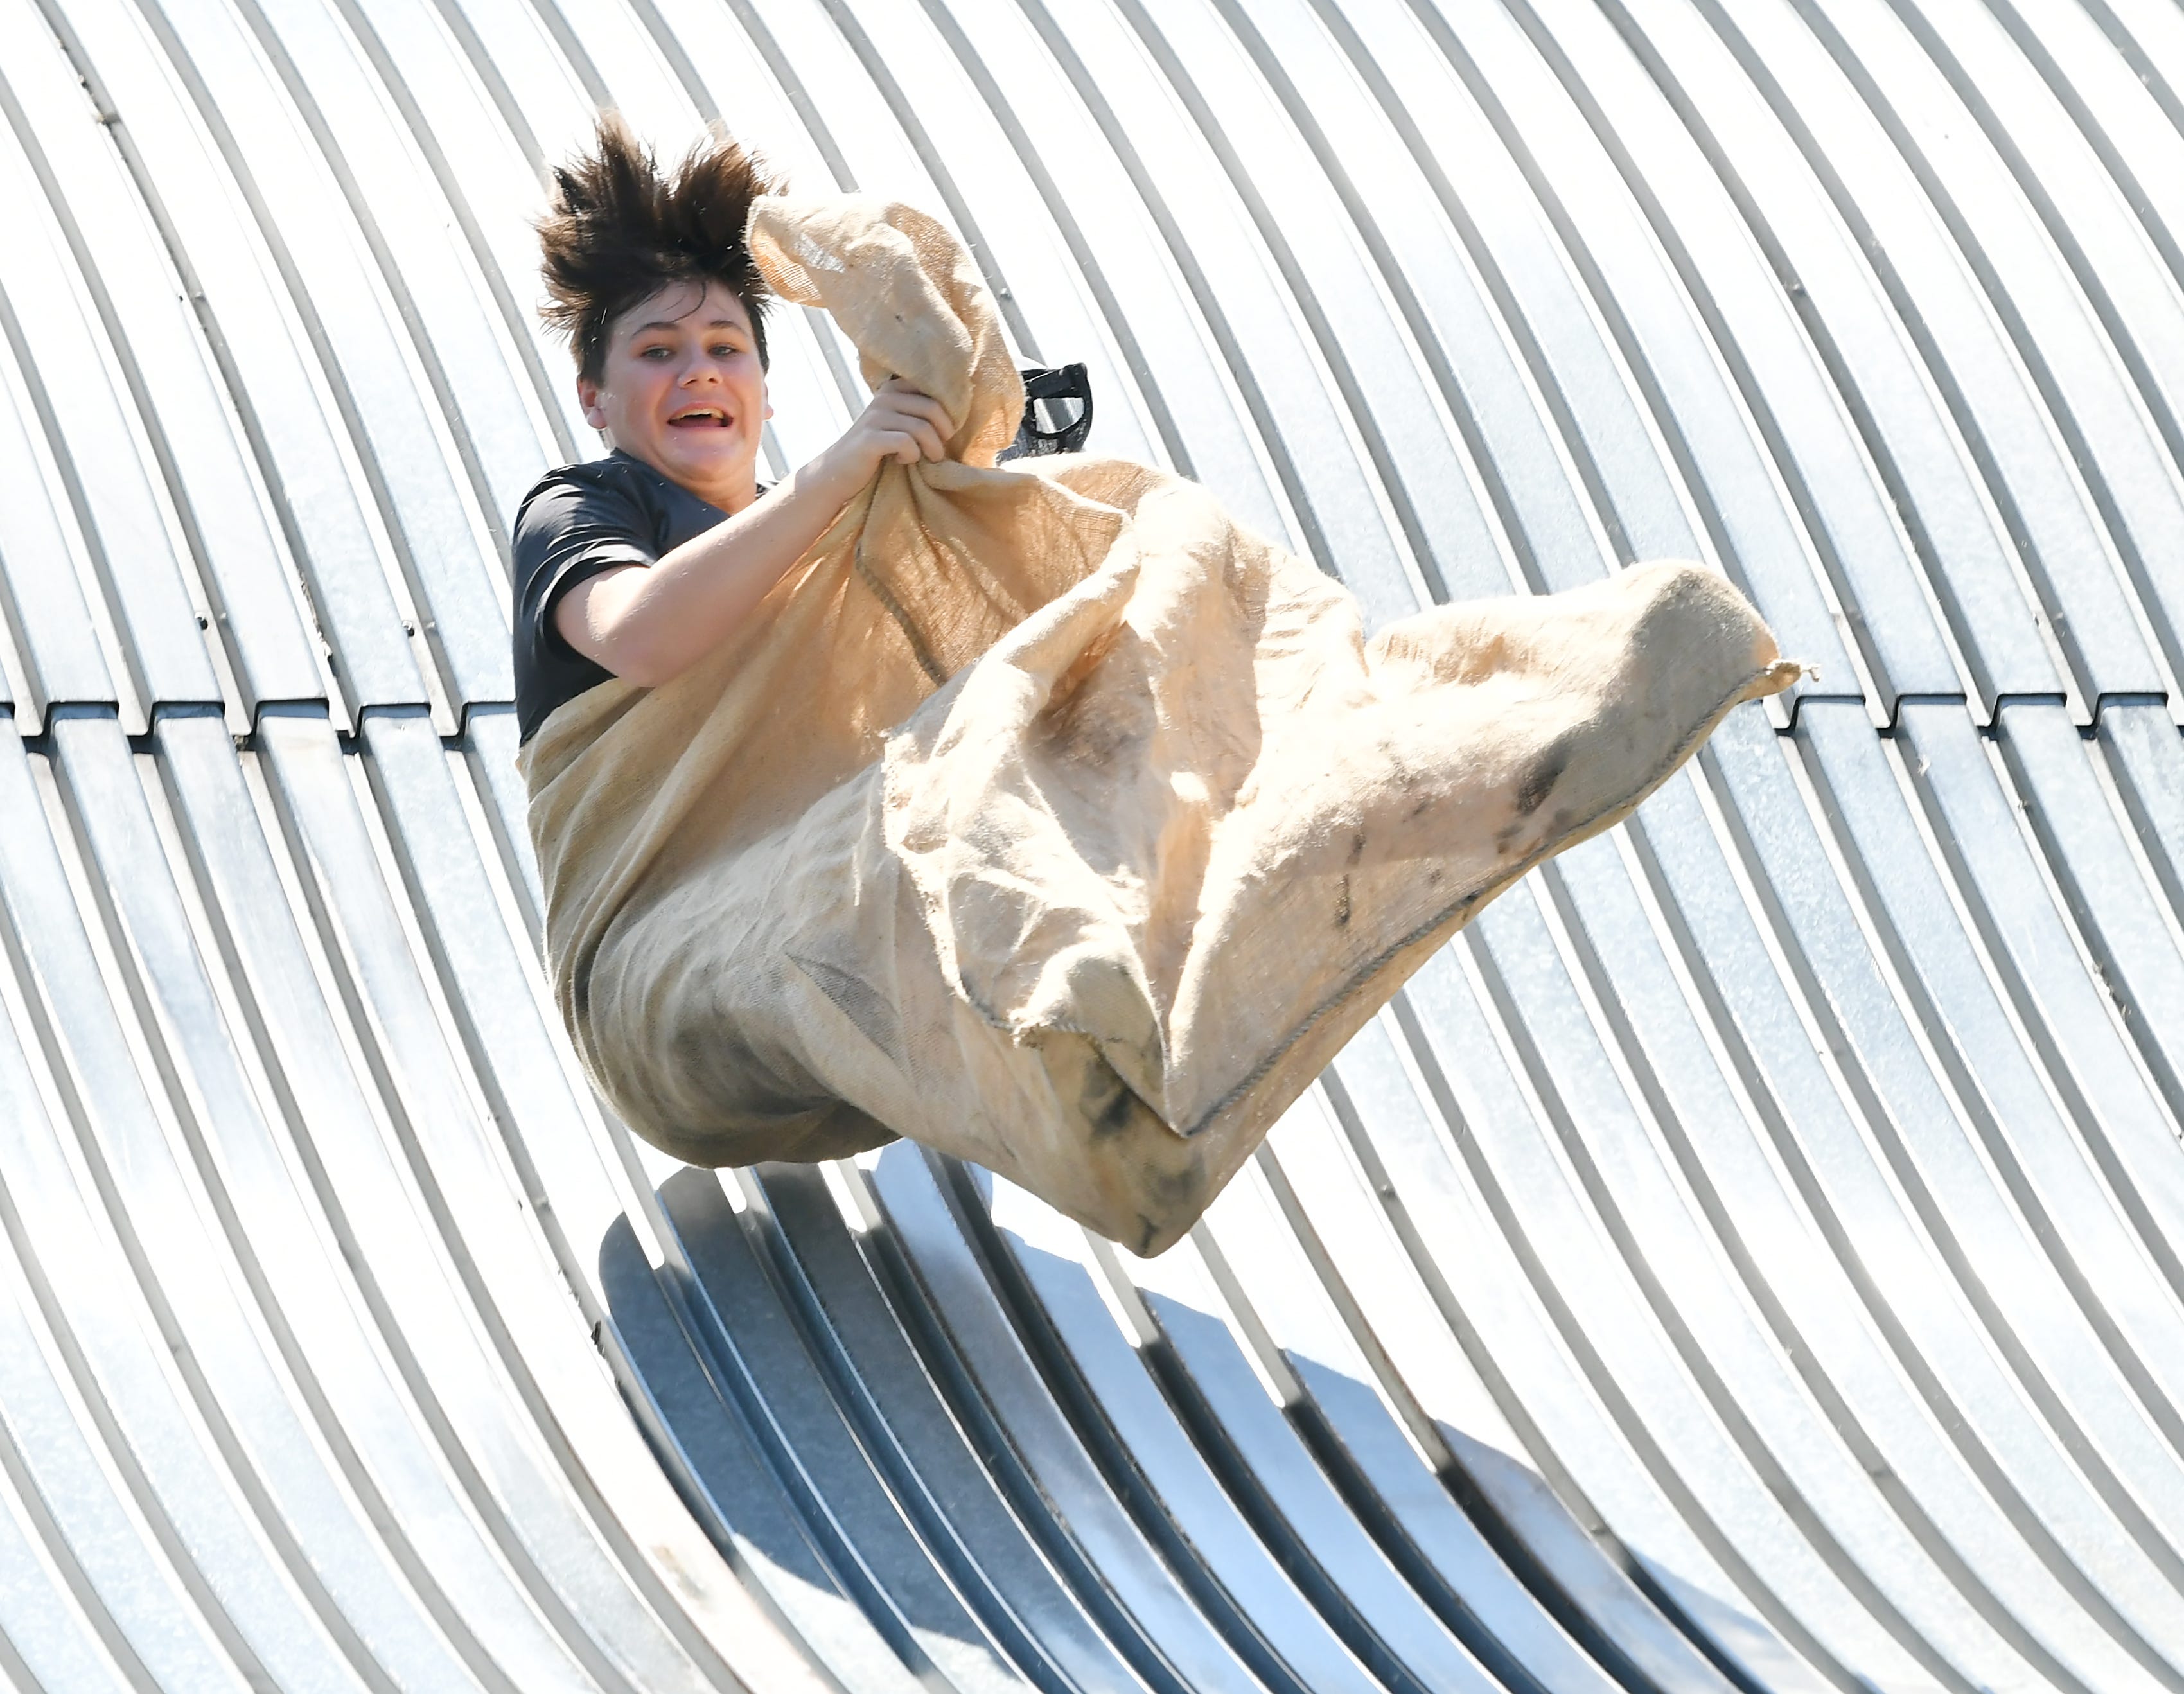 John Whitney, 12, of Royal Oak is airborne going down the giant slide on Belle Isle in Detroit on Aug. 19, 2022.